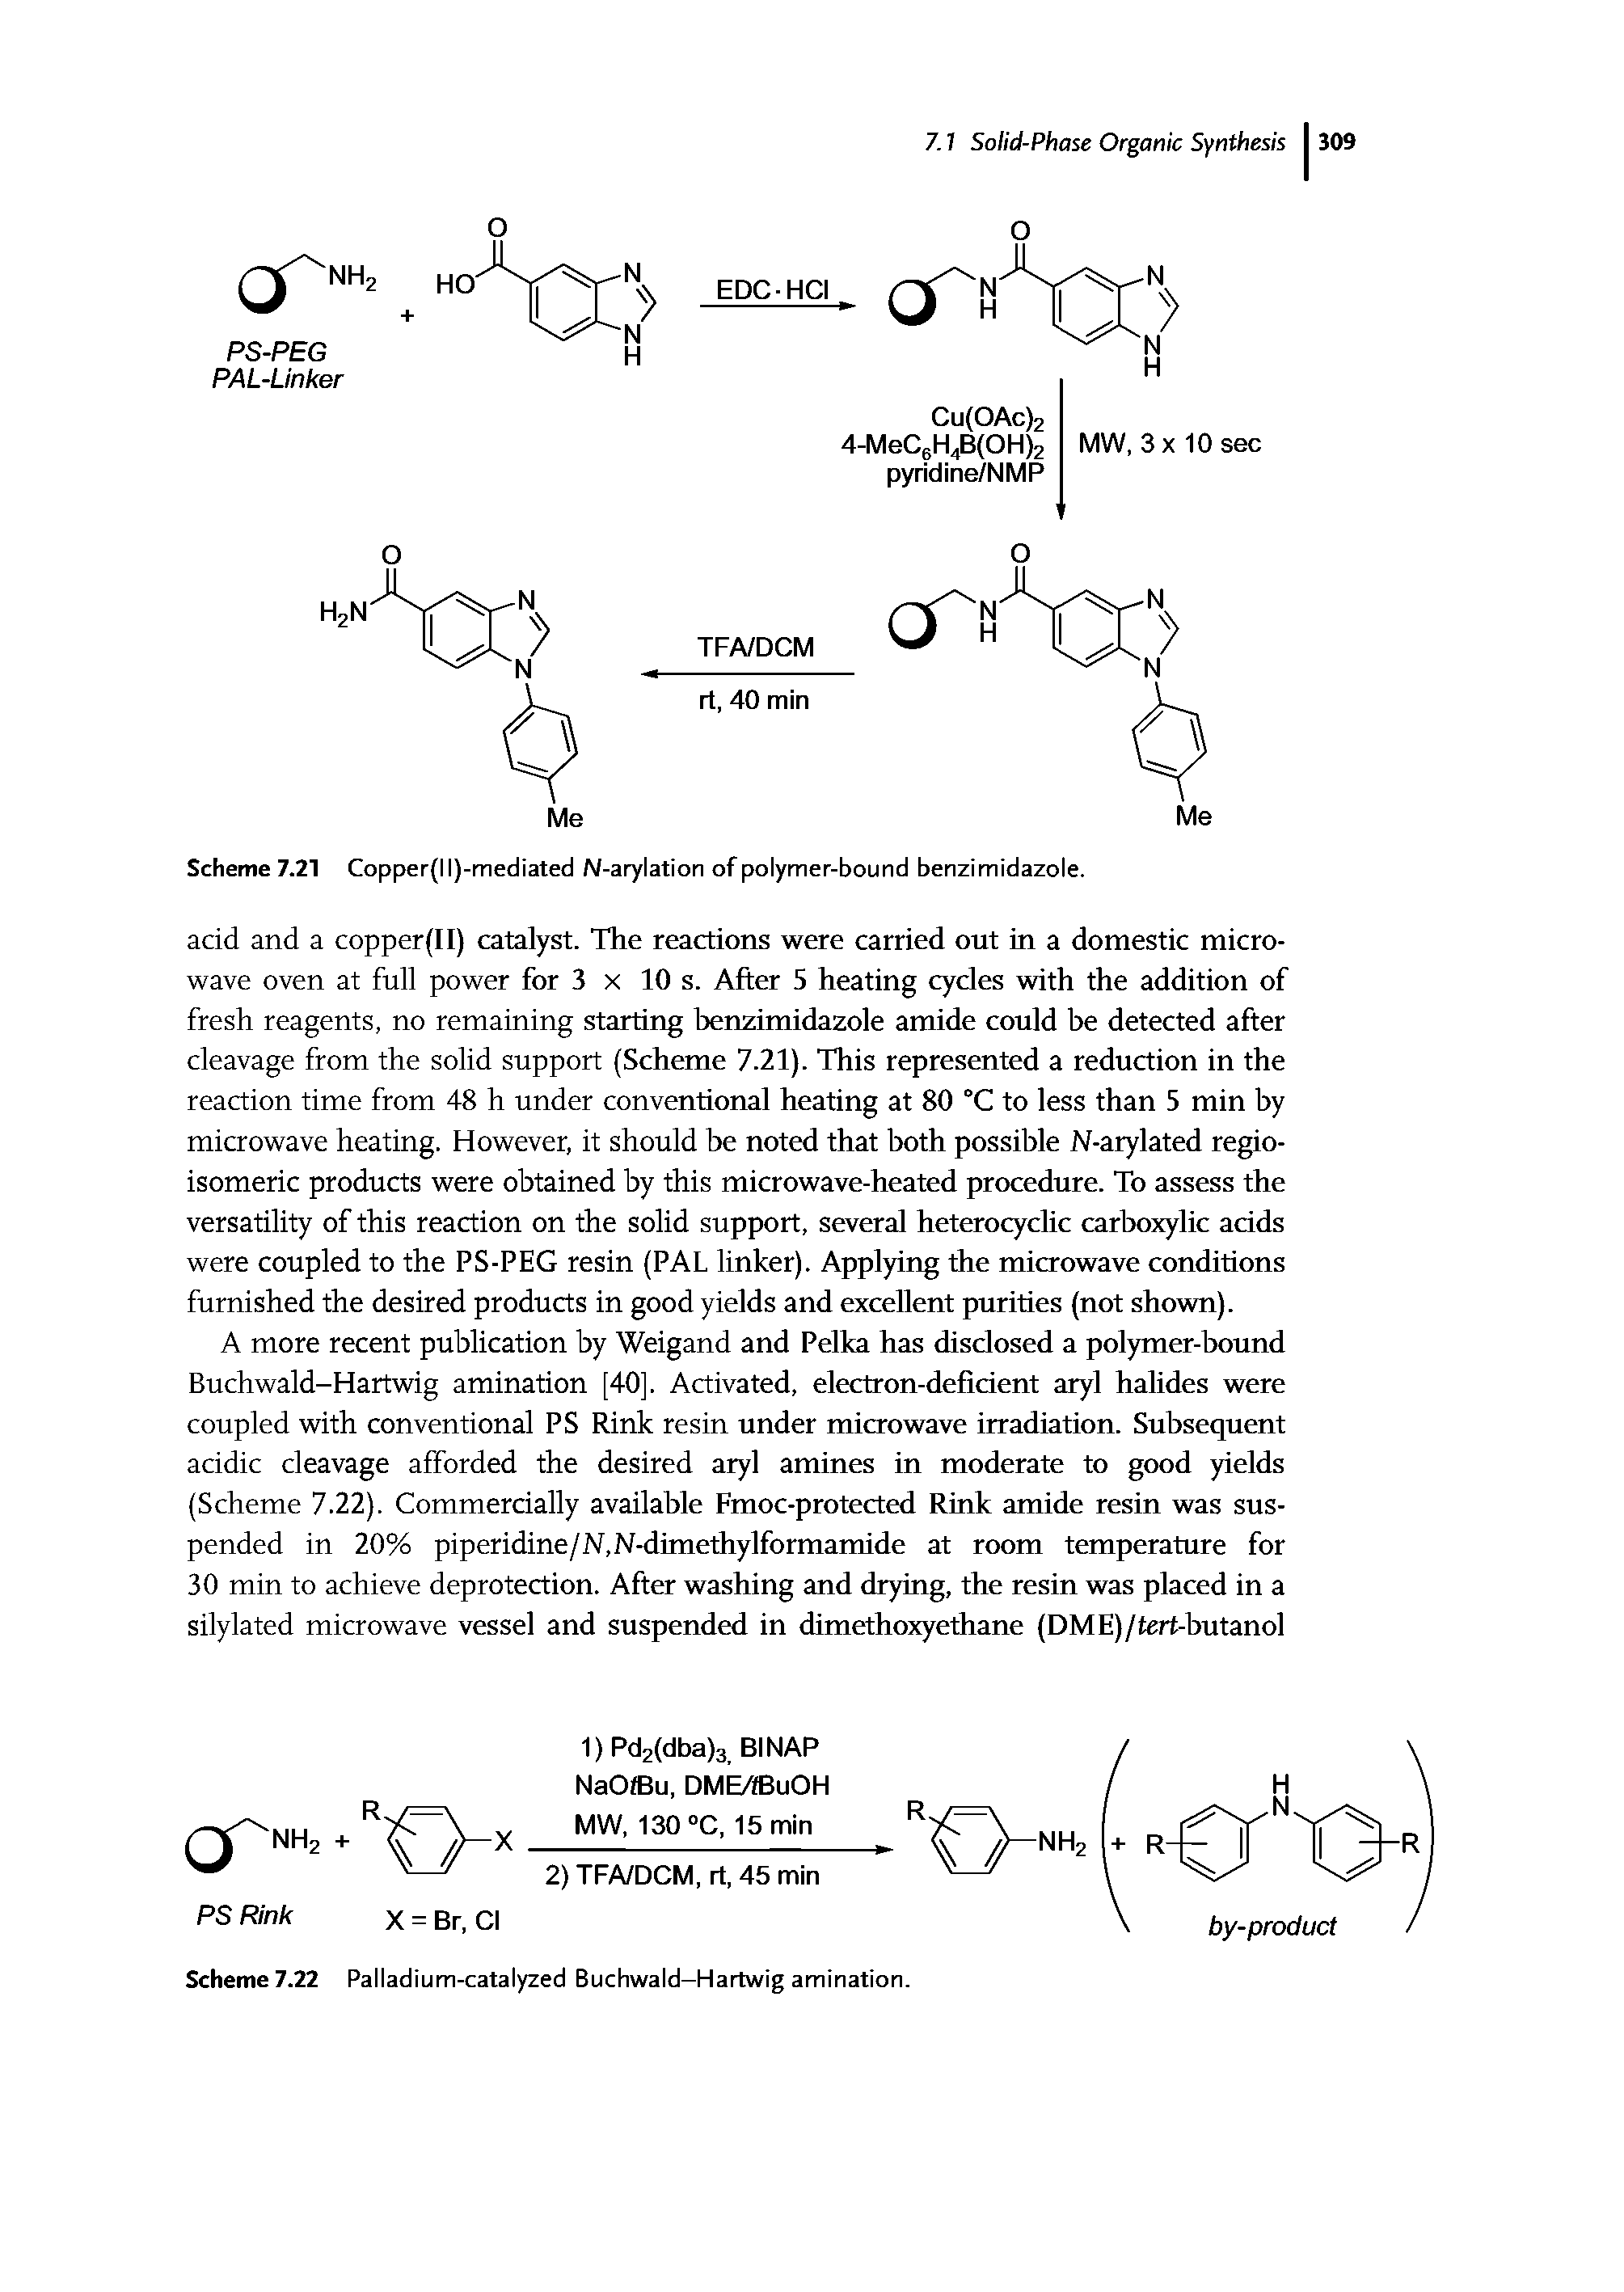 Scheme 7.22 Palladium-catalyzed Buchwald-Hartwig amination.